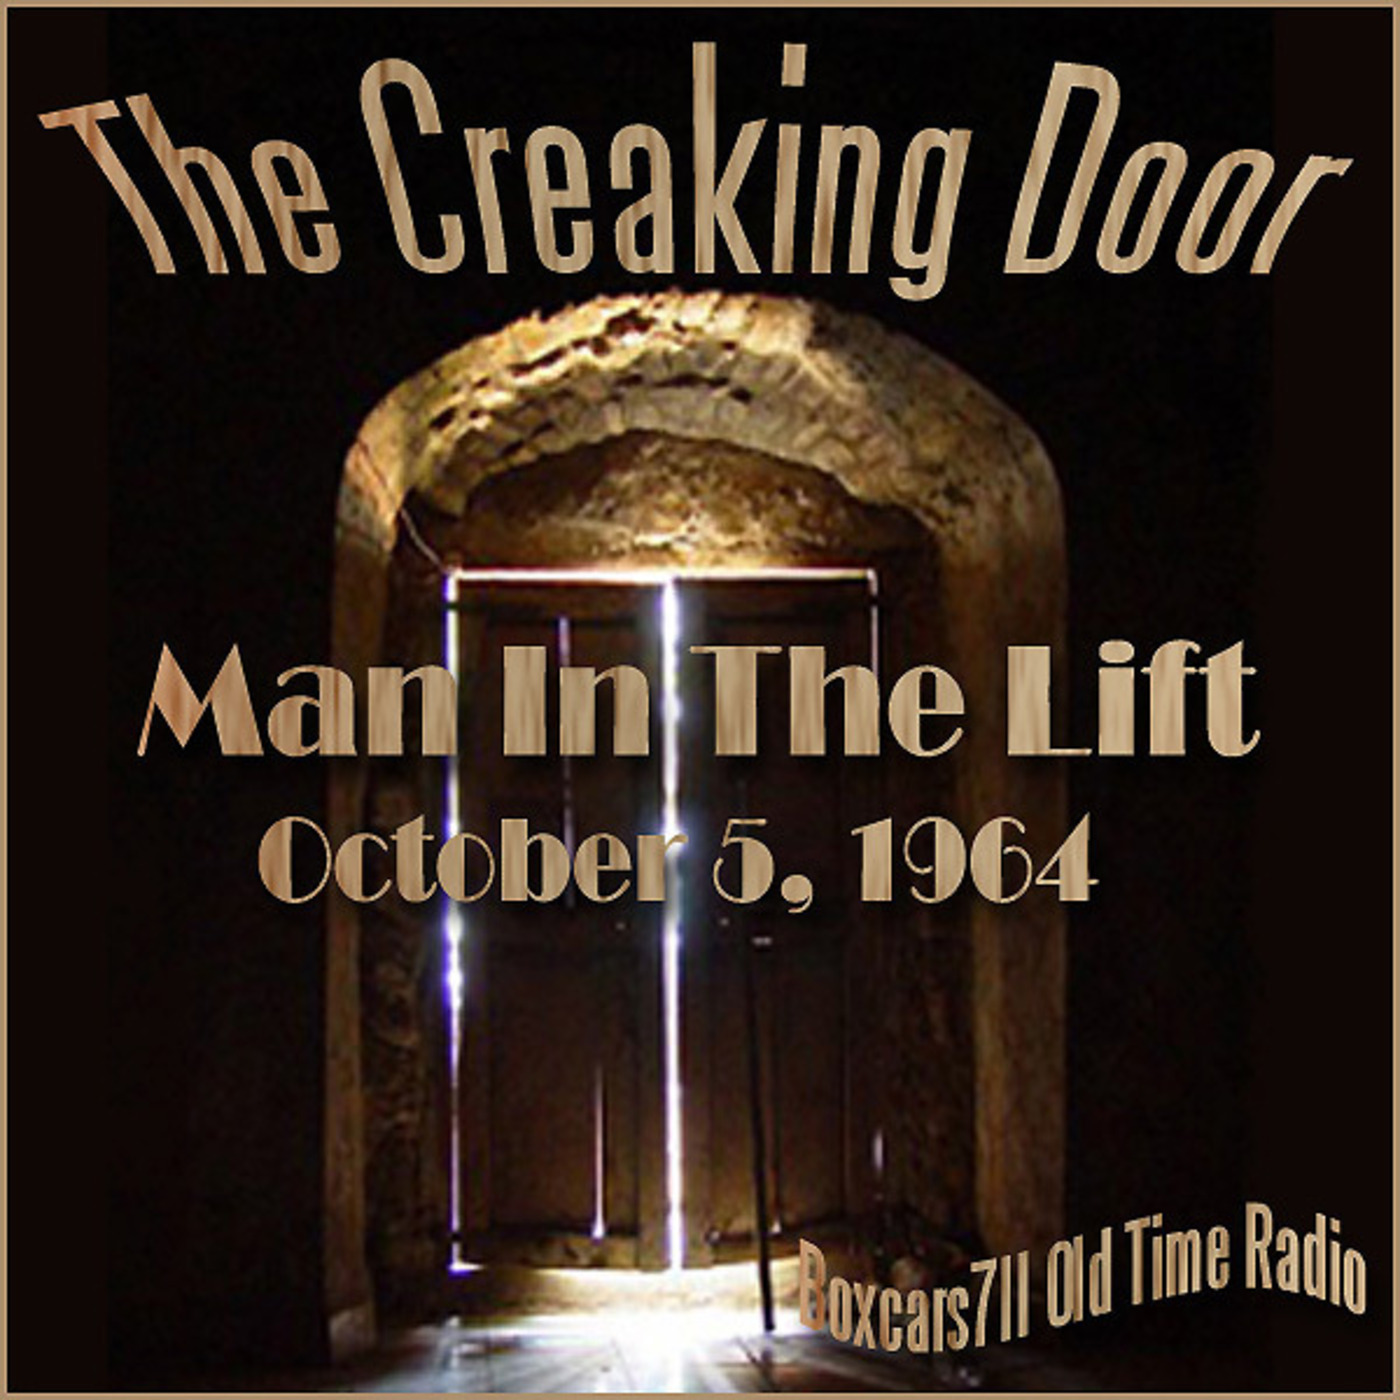 Episode 9622: The Creaking Door - 